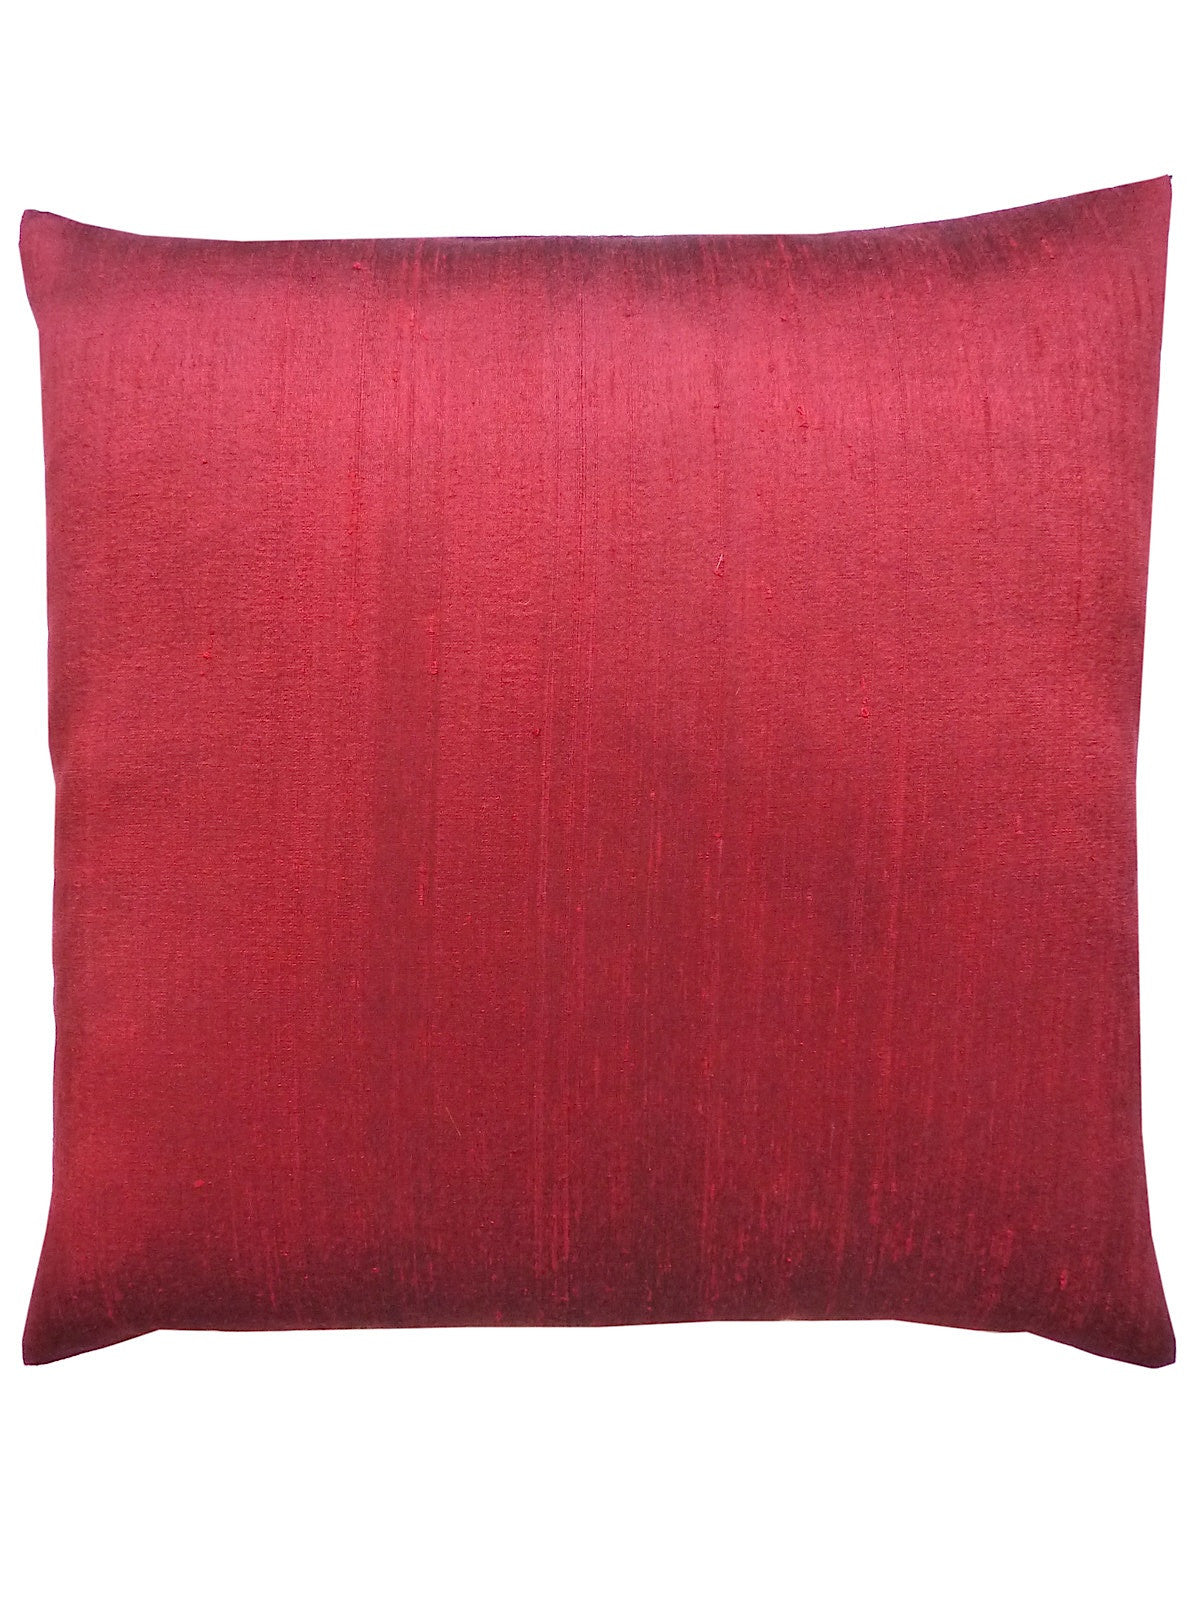 Thai Silk Modern Ikat Pillow Red Black